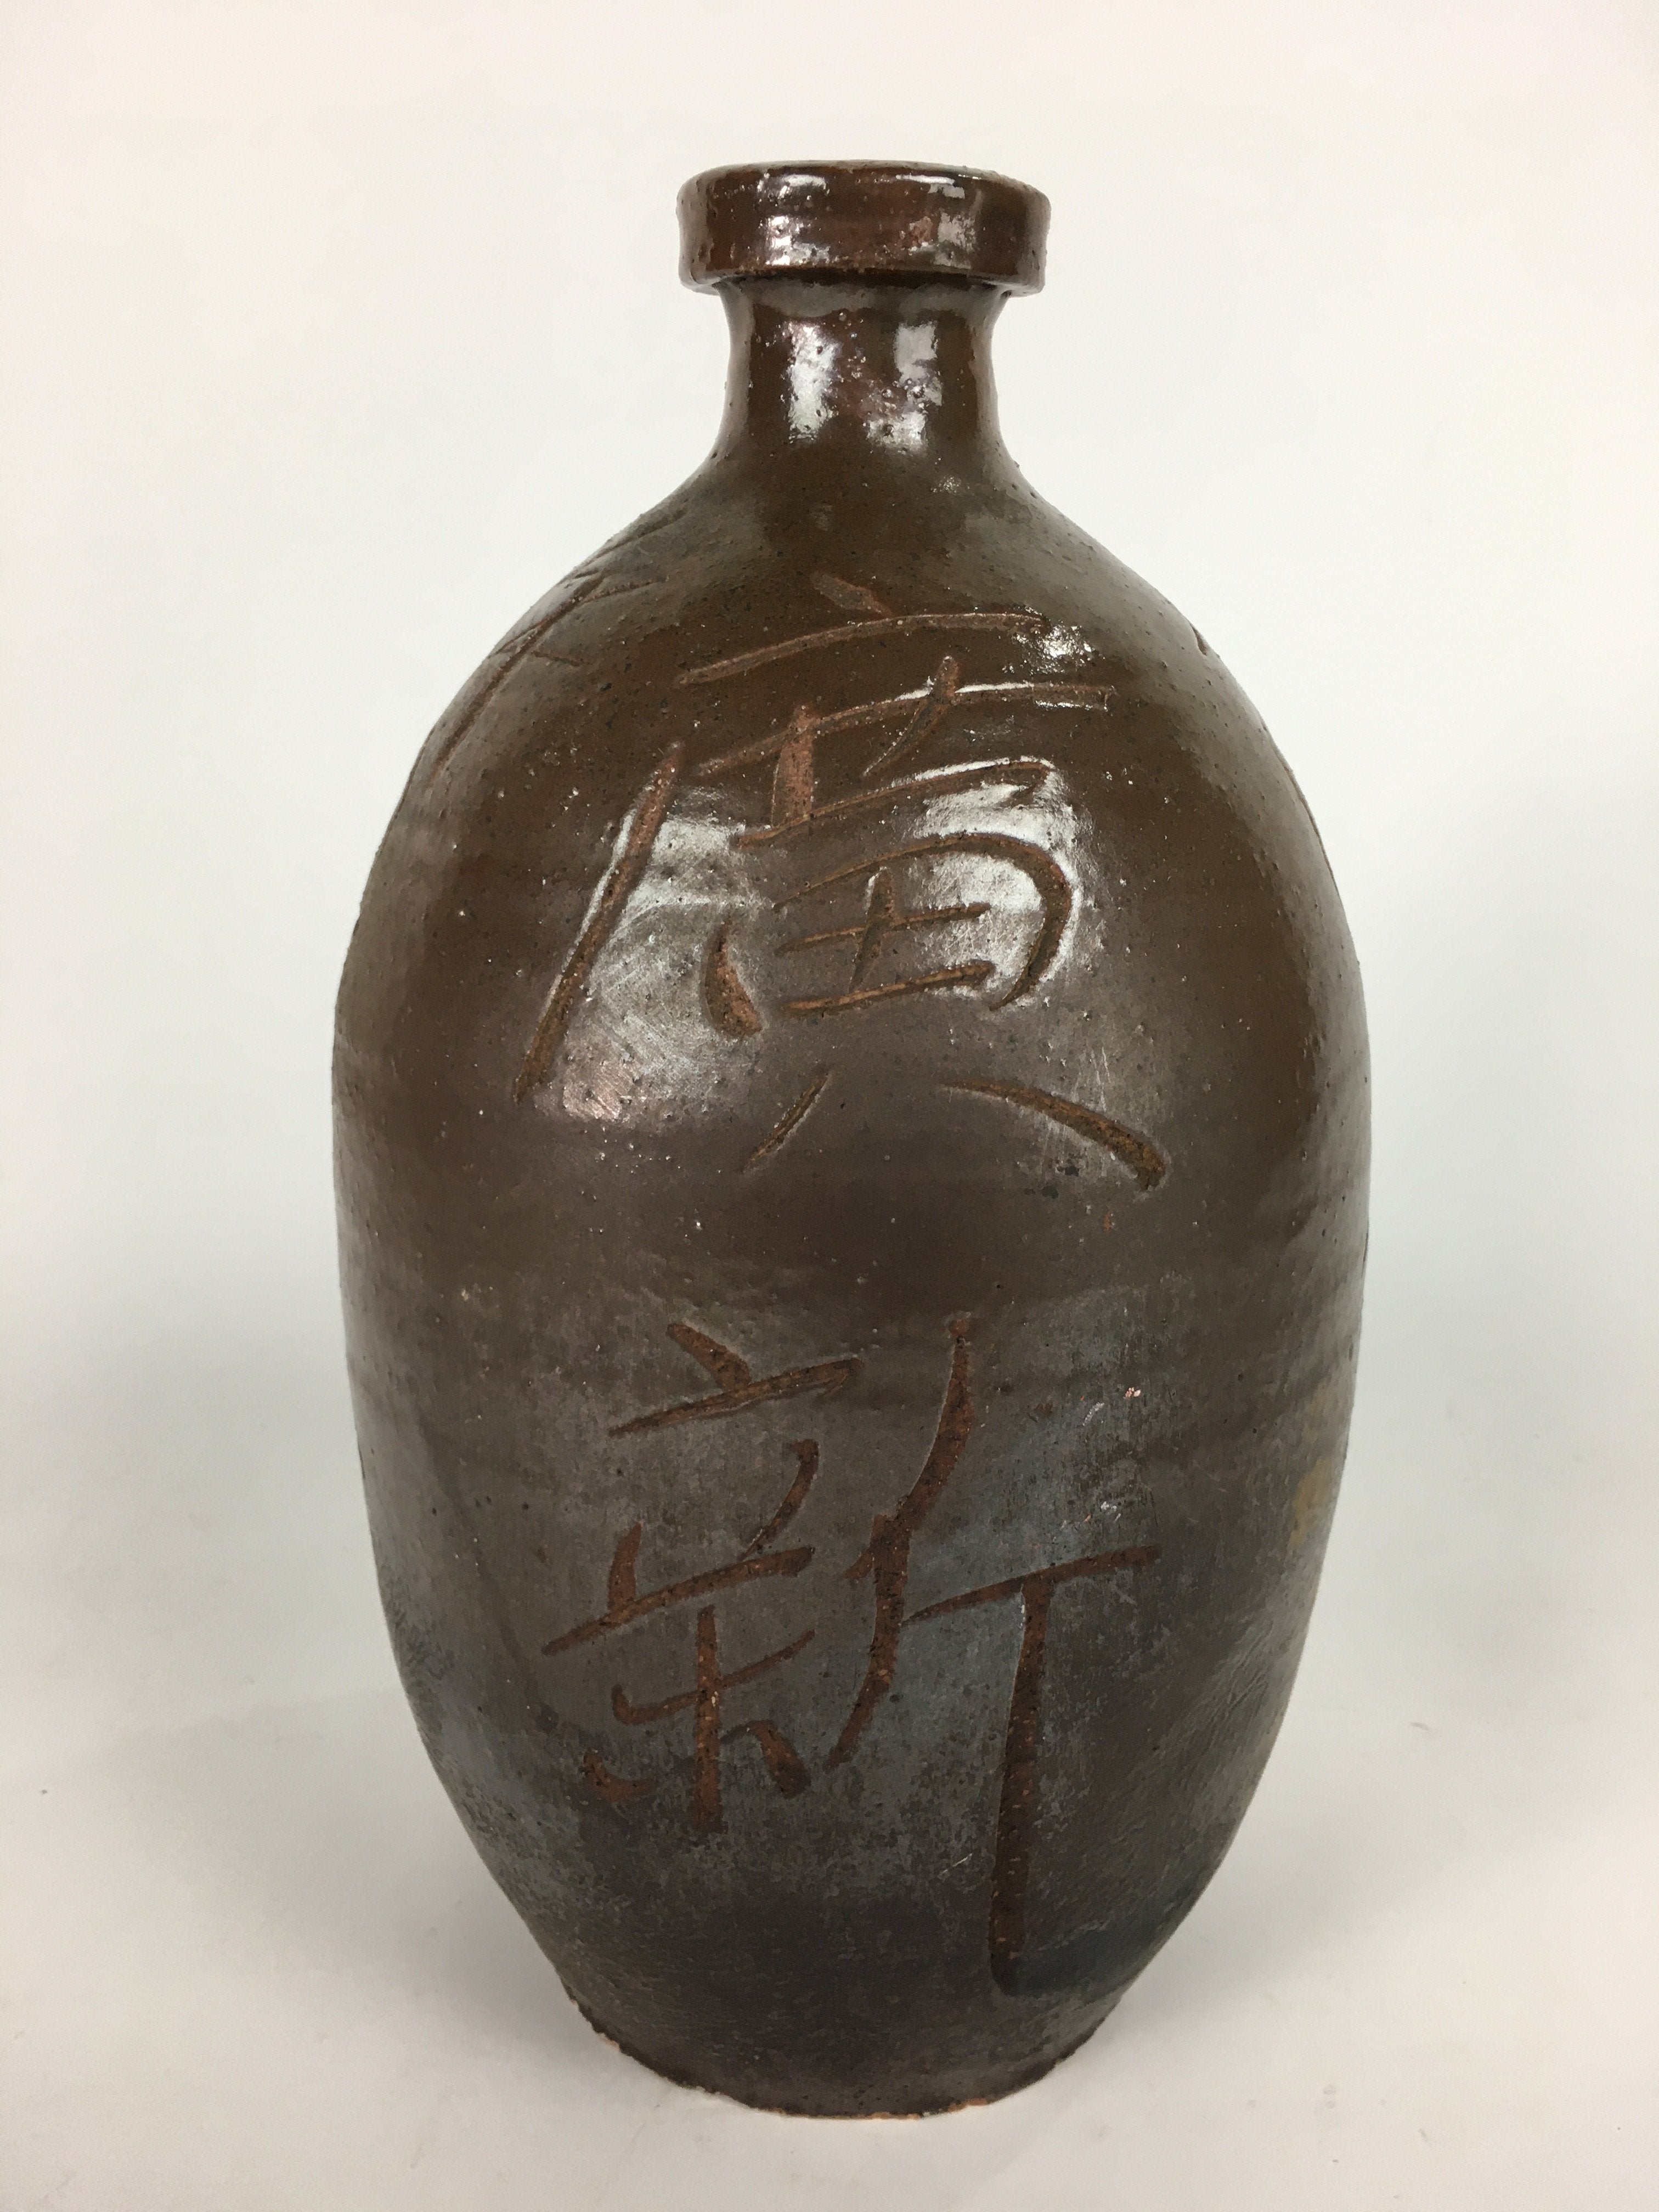 Japanese Ceramic Sake Bottle Vtg Tokkuri Pottery Kayoi-Tokkuri Brown TS295